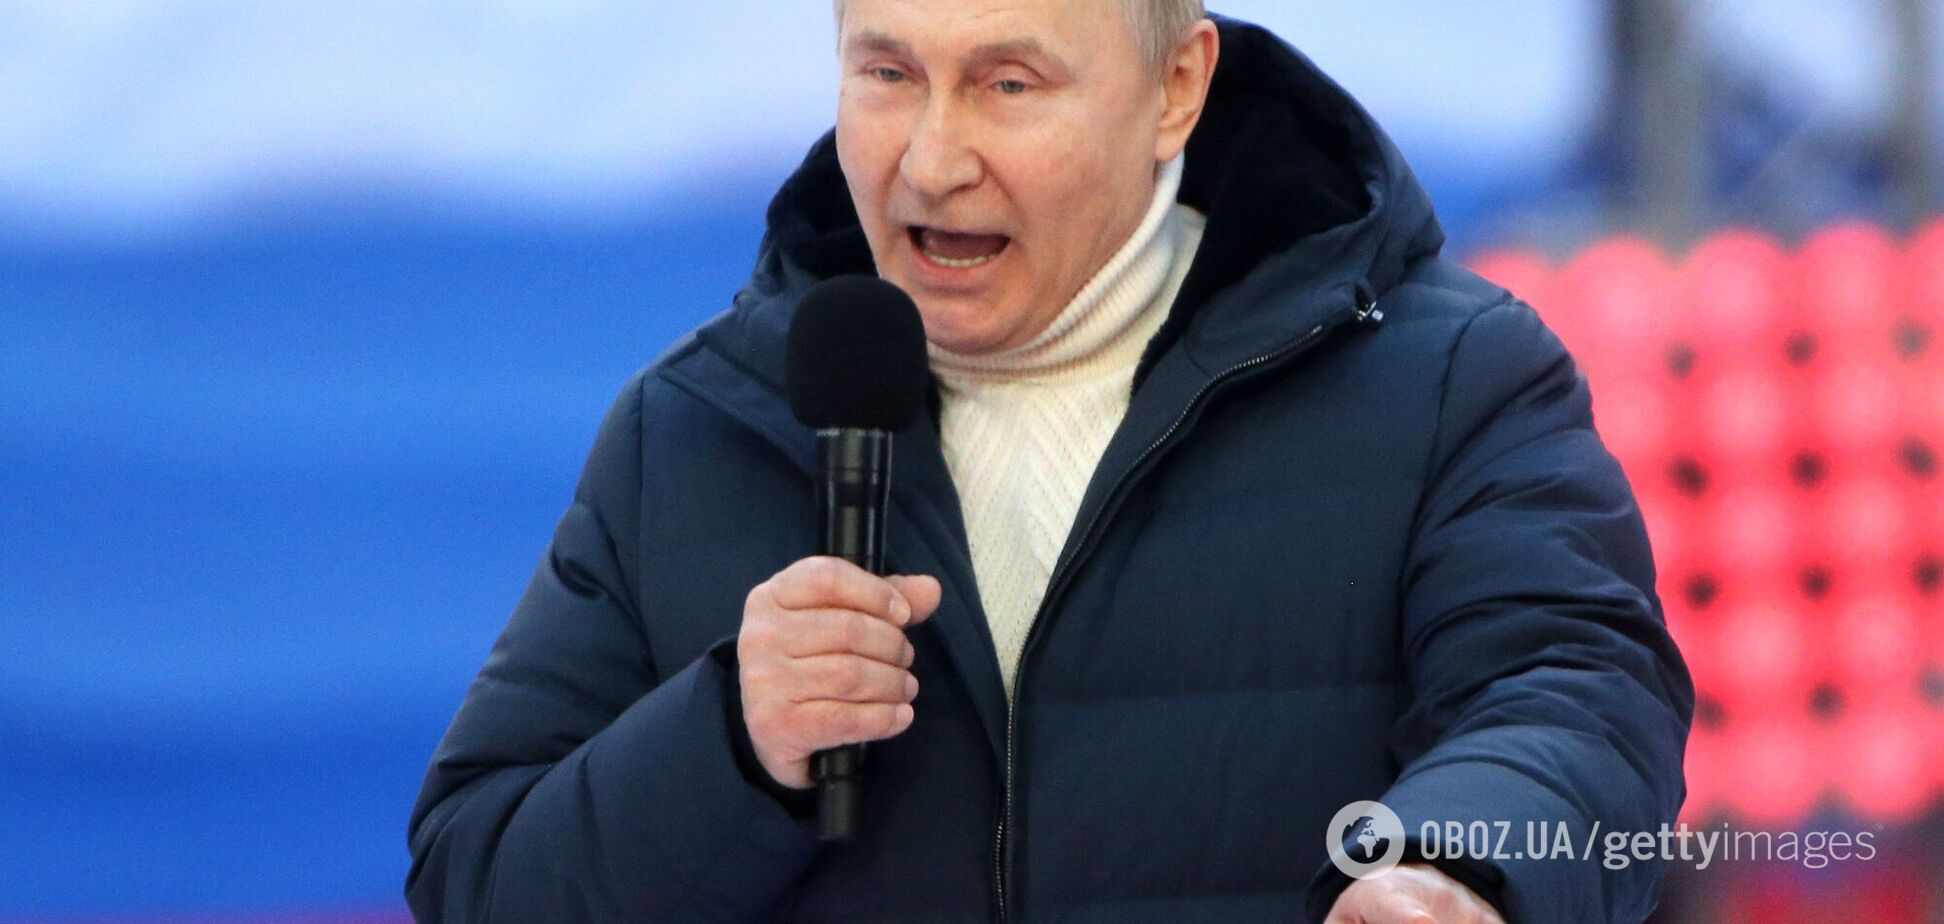 Уважаемые коллеги, не пишите, что Путин сумасшедший. Почему это опасно?